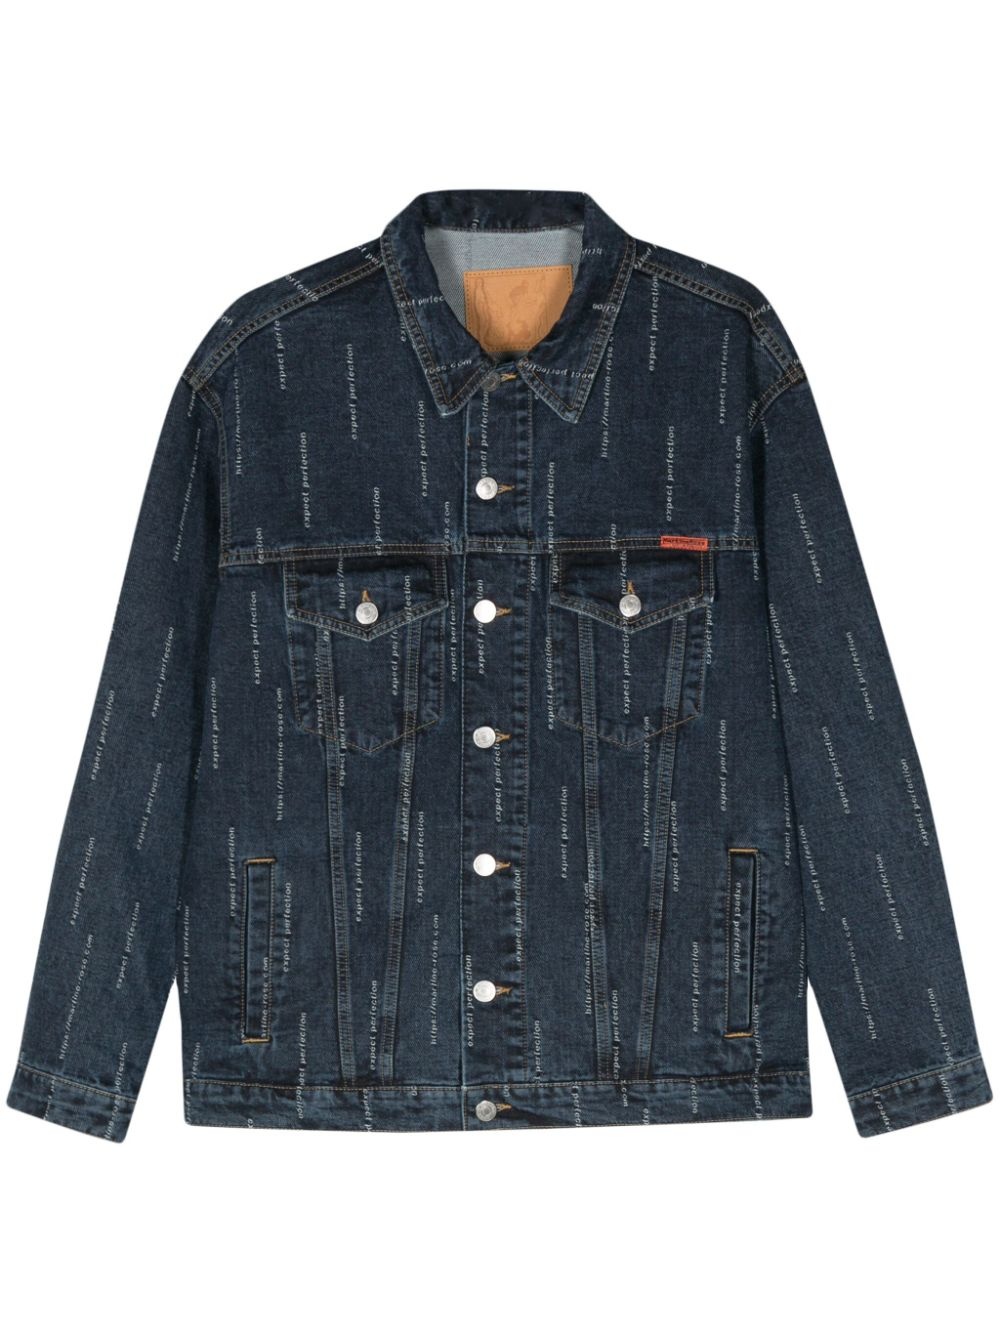 embroidered-slogan denim jacket - 1